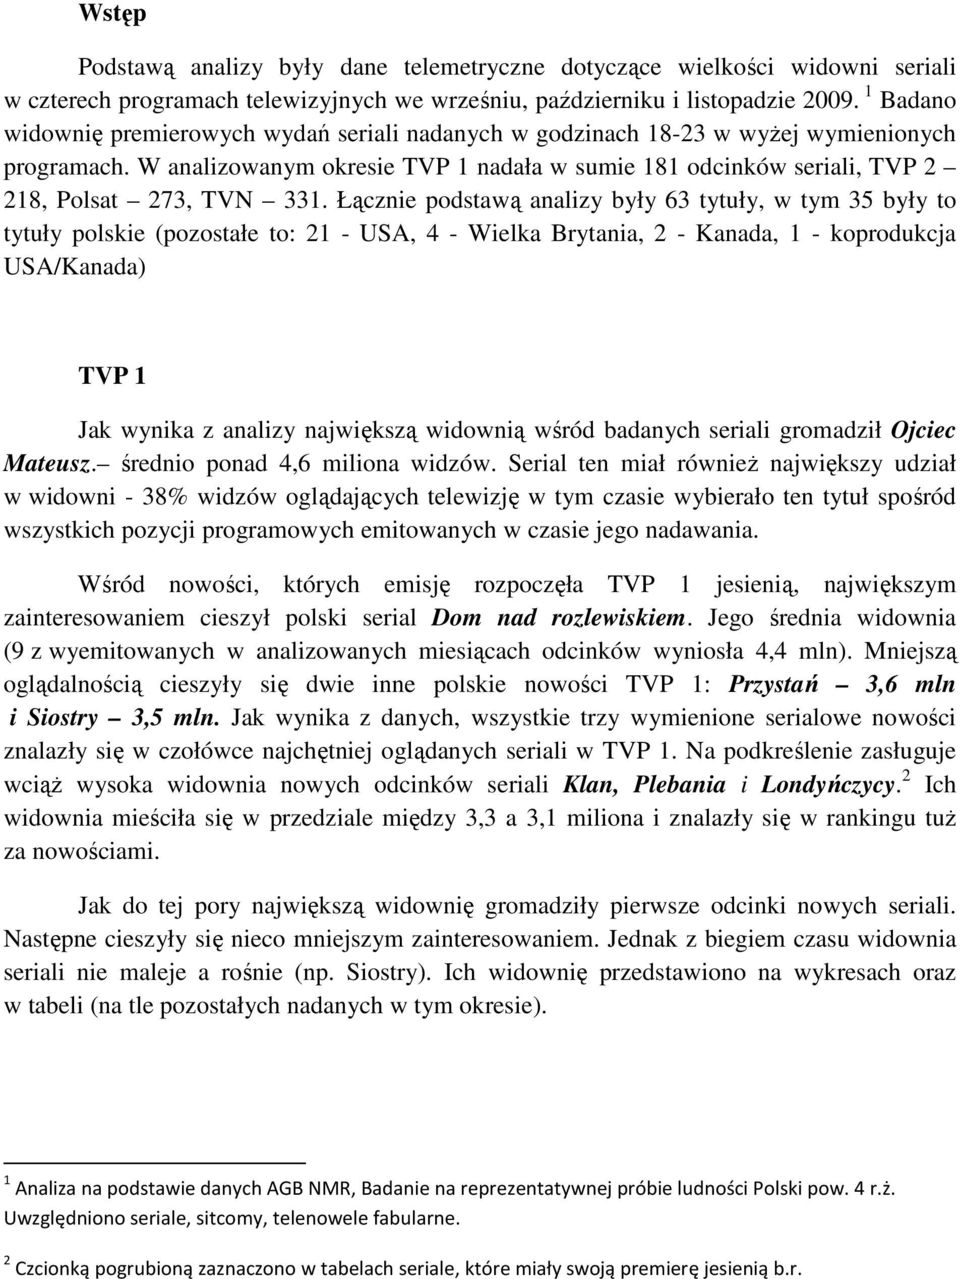 W analizowanym okresie TVP 1 nadała w sumie 181 odcinków seriali, TVP 2 218, Polsat 273, TVN 331.